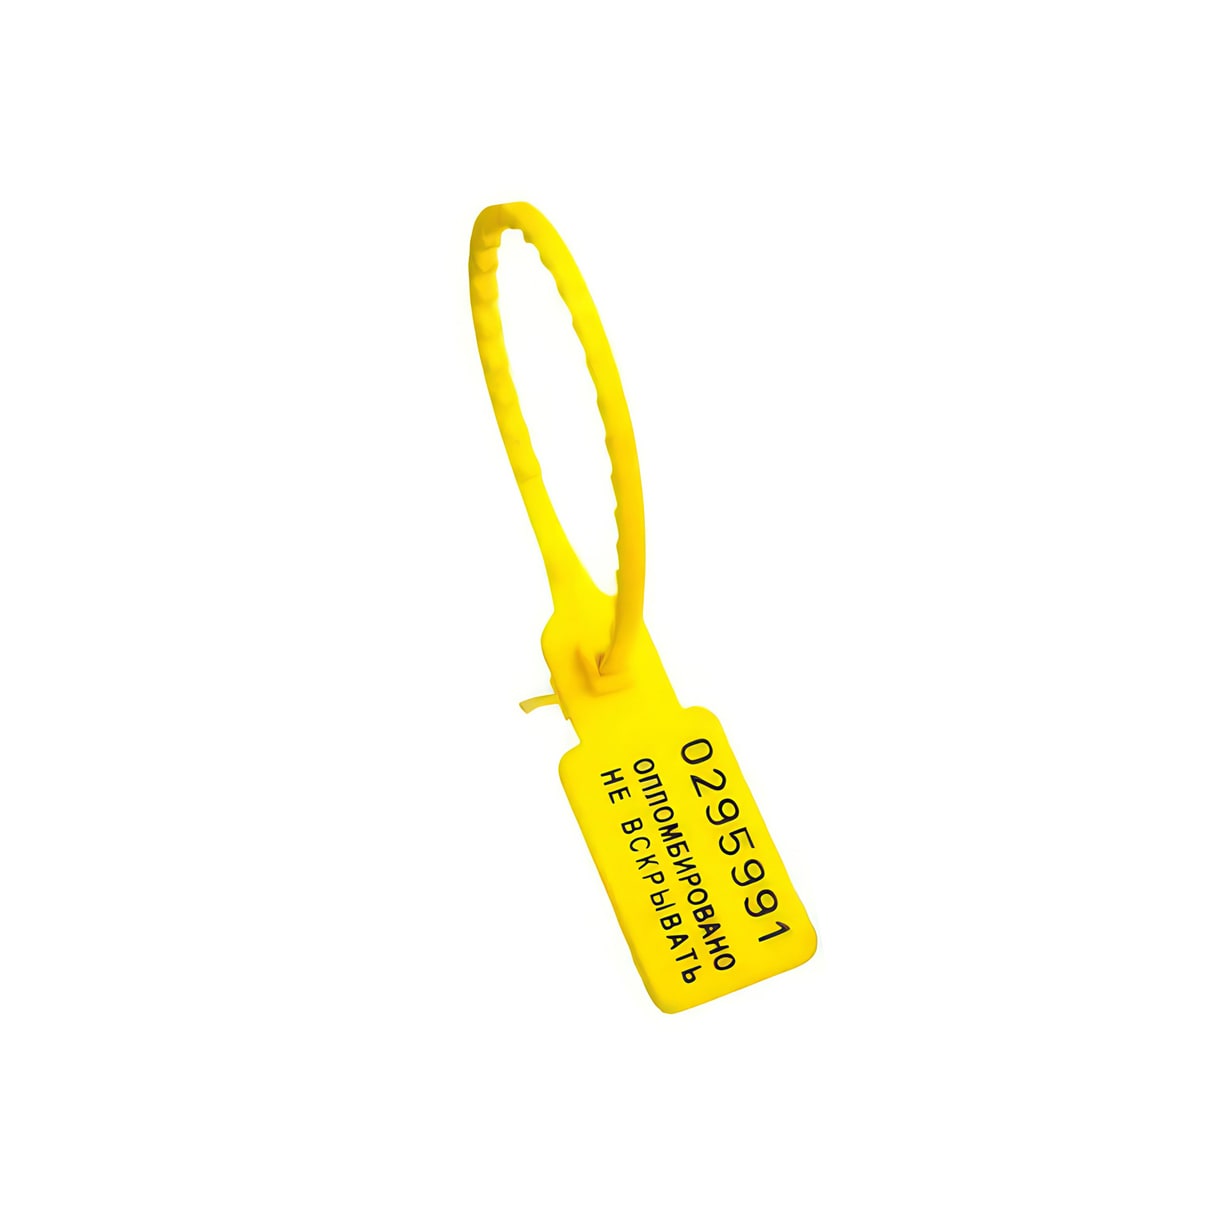 Пломба номерная пластиковая УП-165 желтый оптом в наличии, на заказ